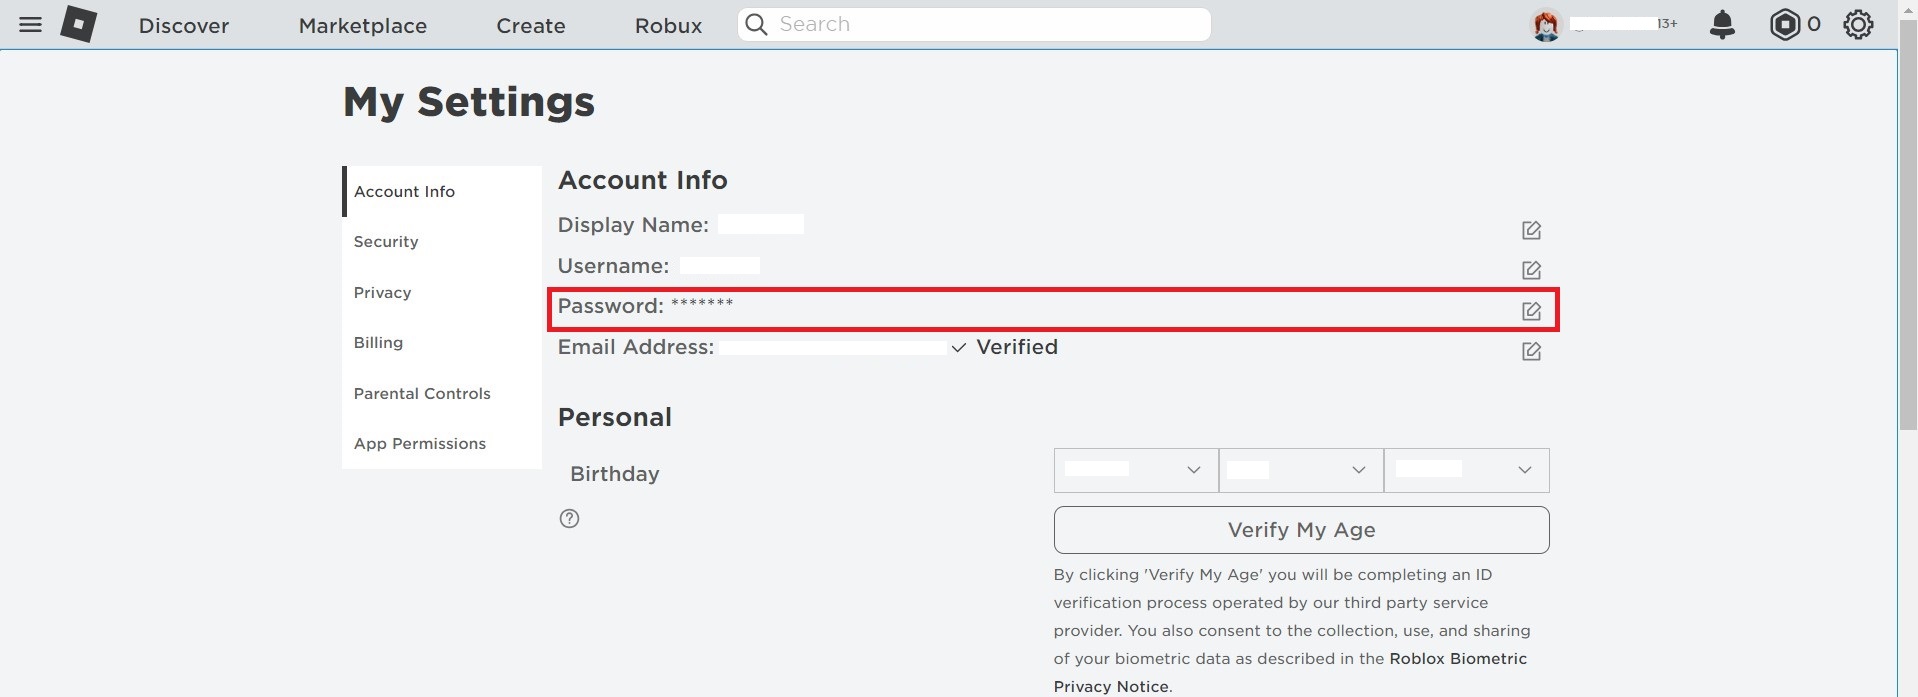 Account Info > Change Password. Roblox Error Code 273. 